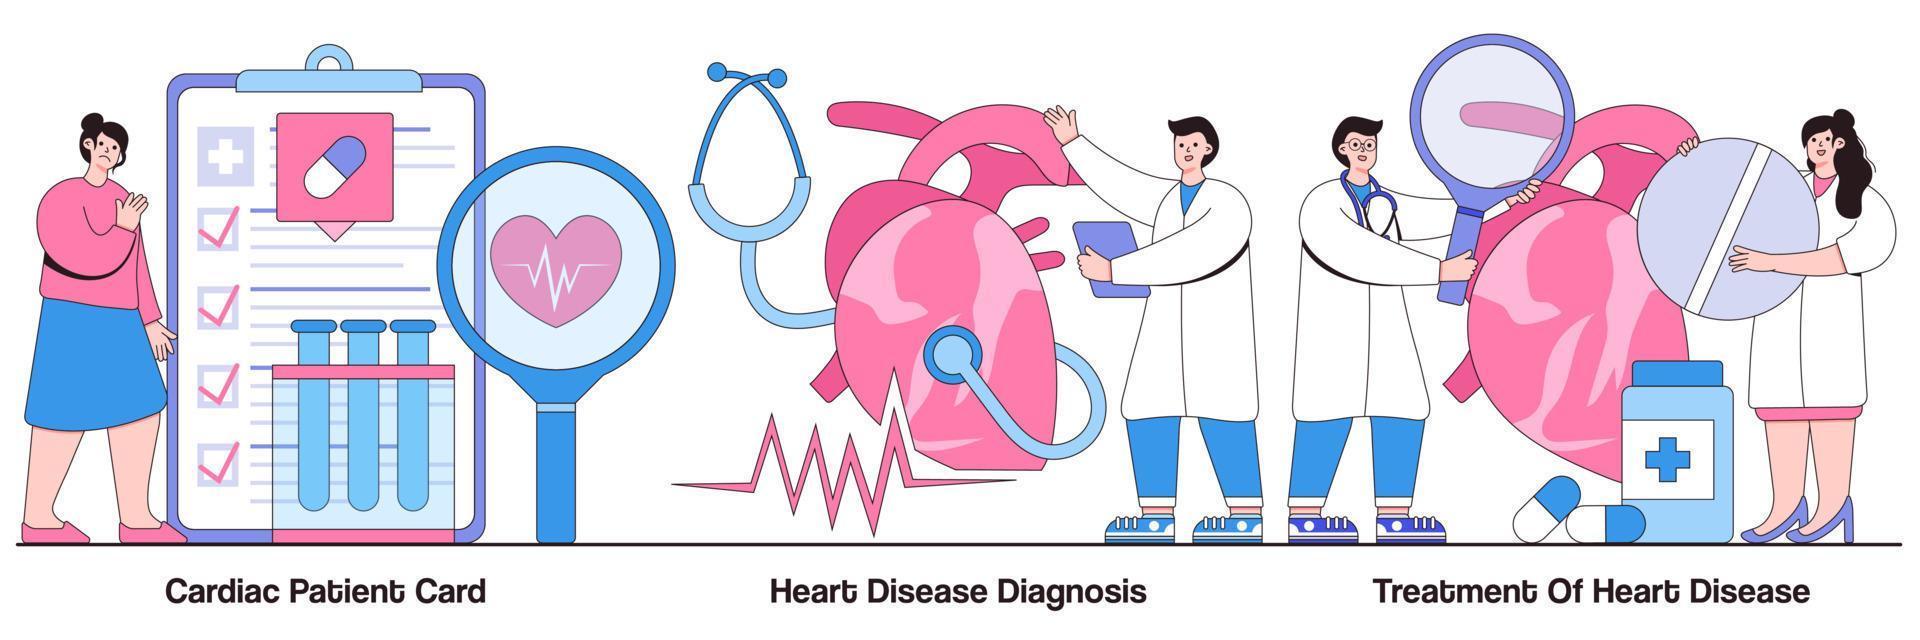 patient cardiaque, diagnostic de maladie cardiaque et pack illustré de traitement vecteur